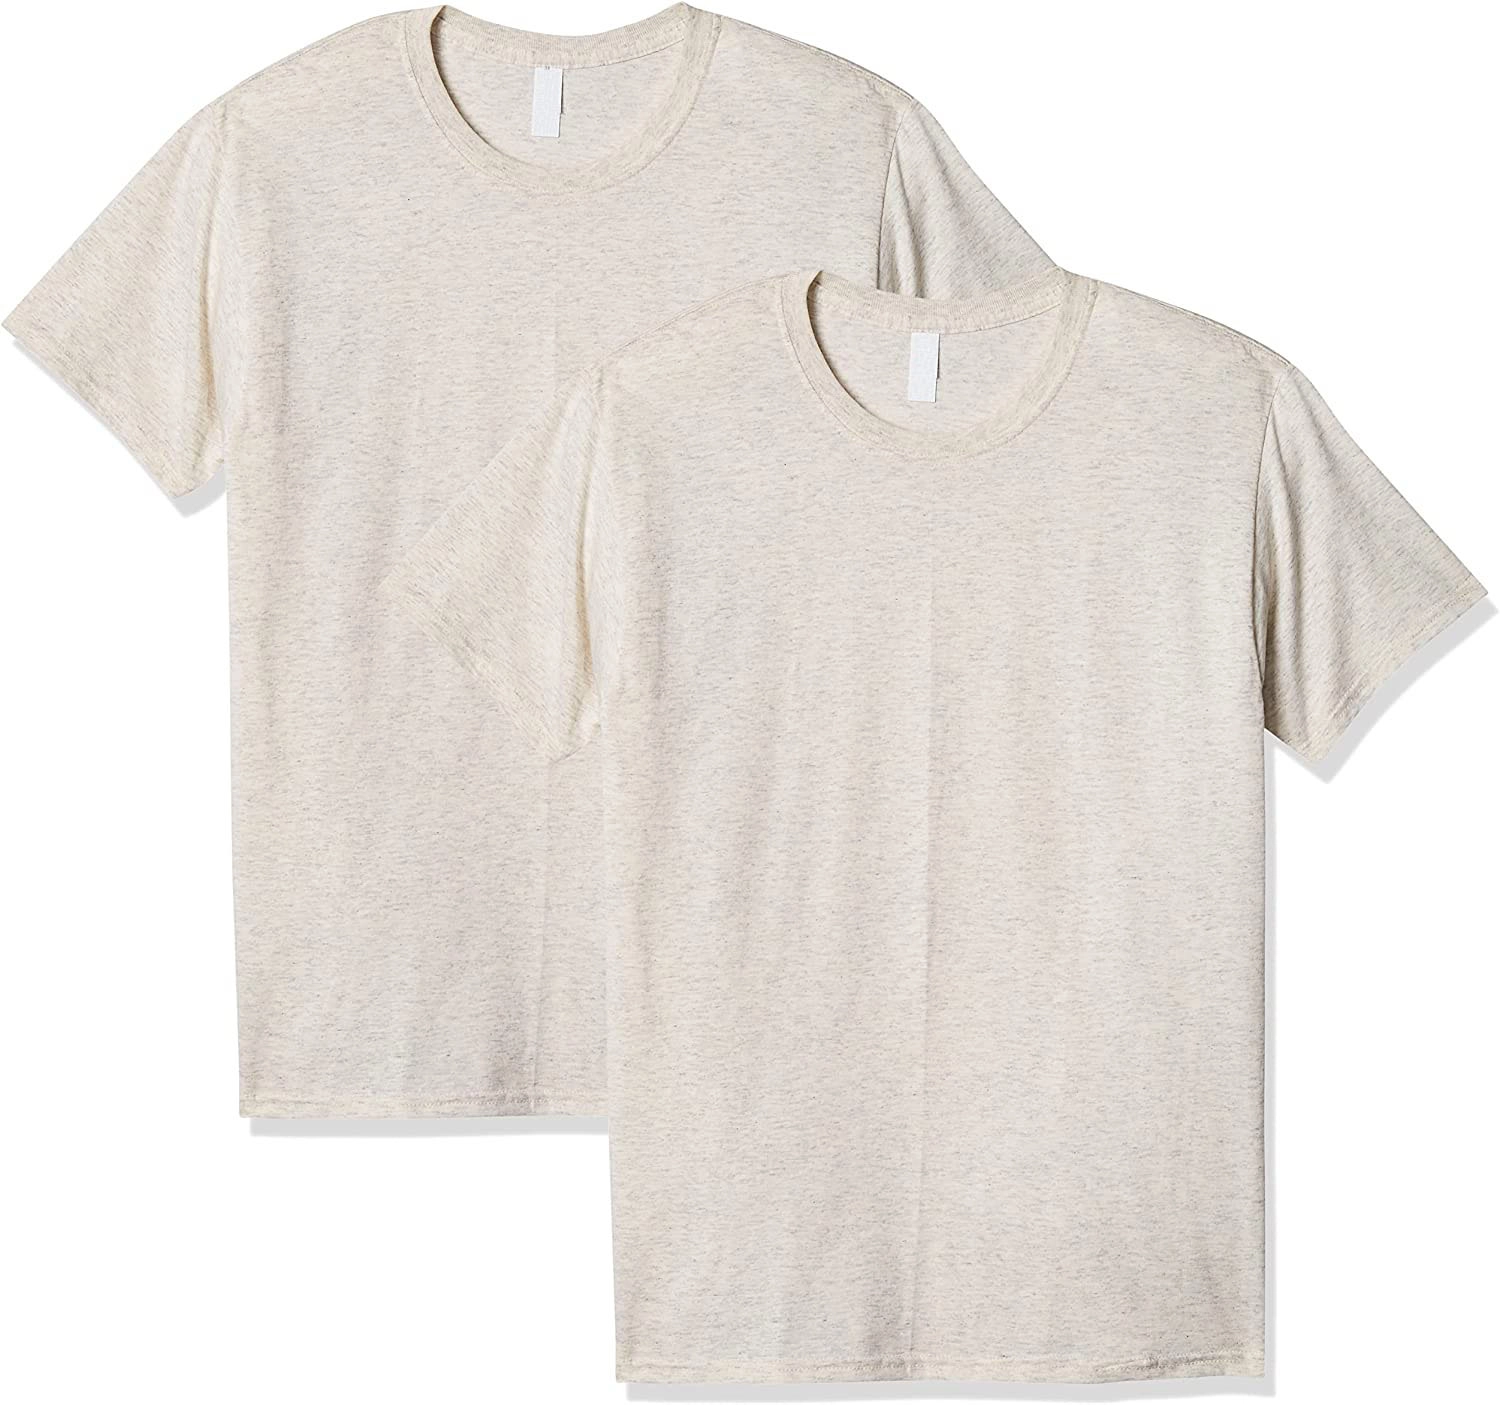 Oatmeal Fleck Men's Tri Blend T-shirt from Bangladesh Garments Manufacturer